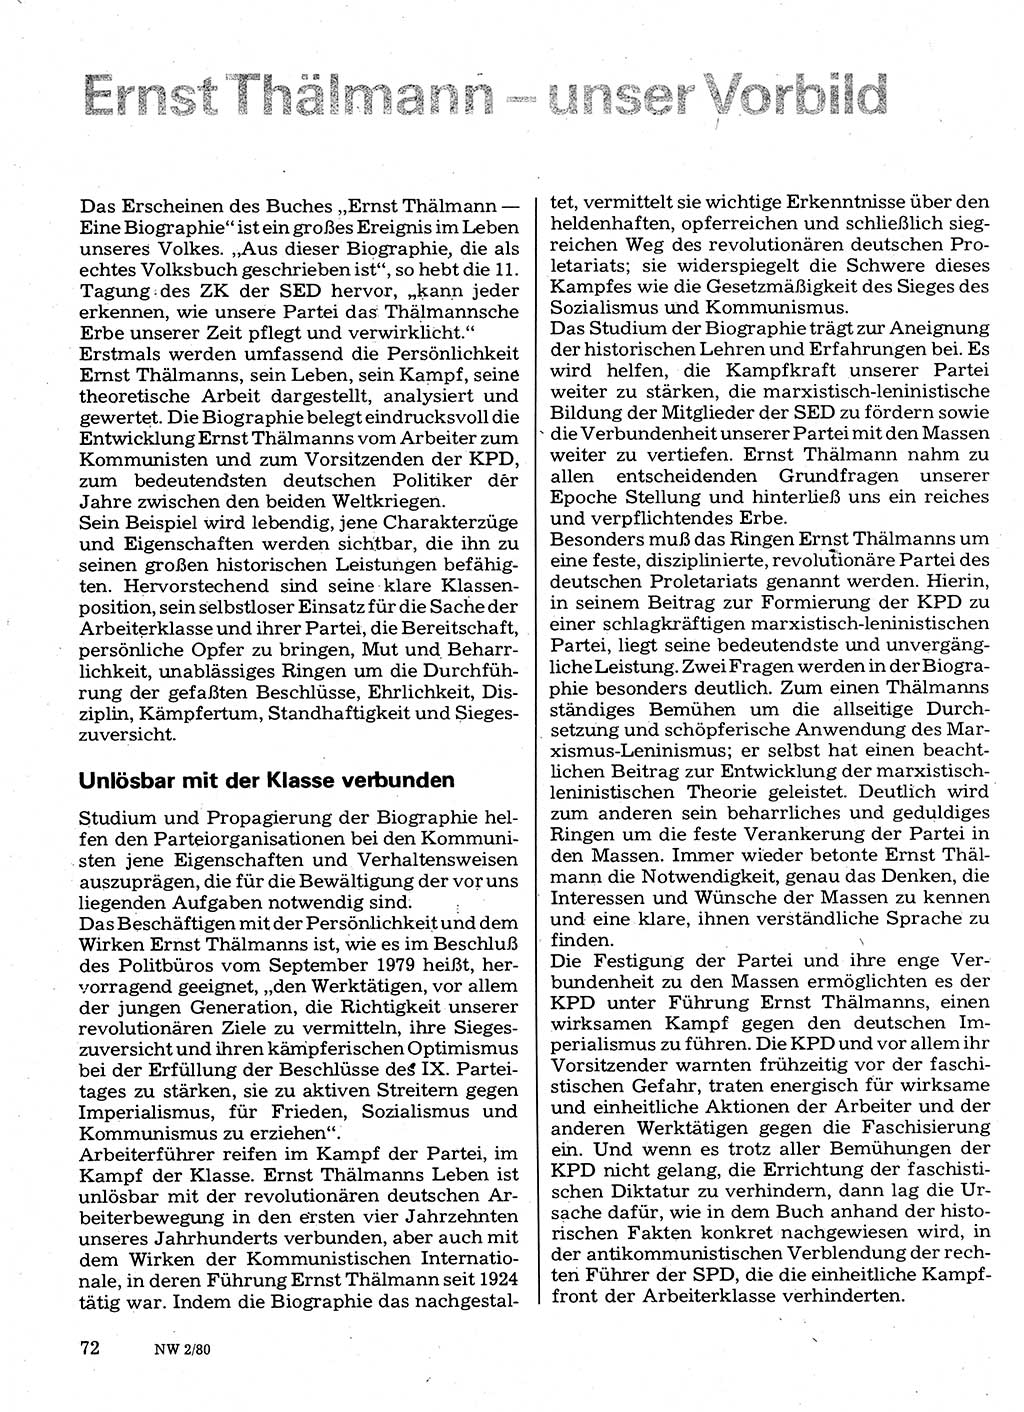 Neuer Weg (NW), Organ des Zentralkomitees (ZK) der SED (Sozialistische Einheitspartei Deutschlands) für Fragen des Parteilebens, 35. Jahrgang [Deutsche Demokratische Republik (DDR)] 1980, Seite 72 (NW ZK SED DDR 1980, S. 72)